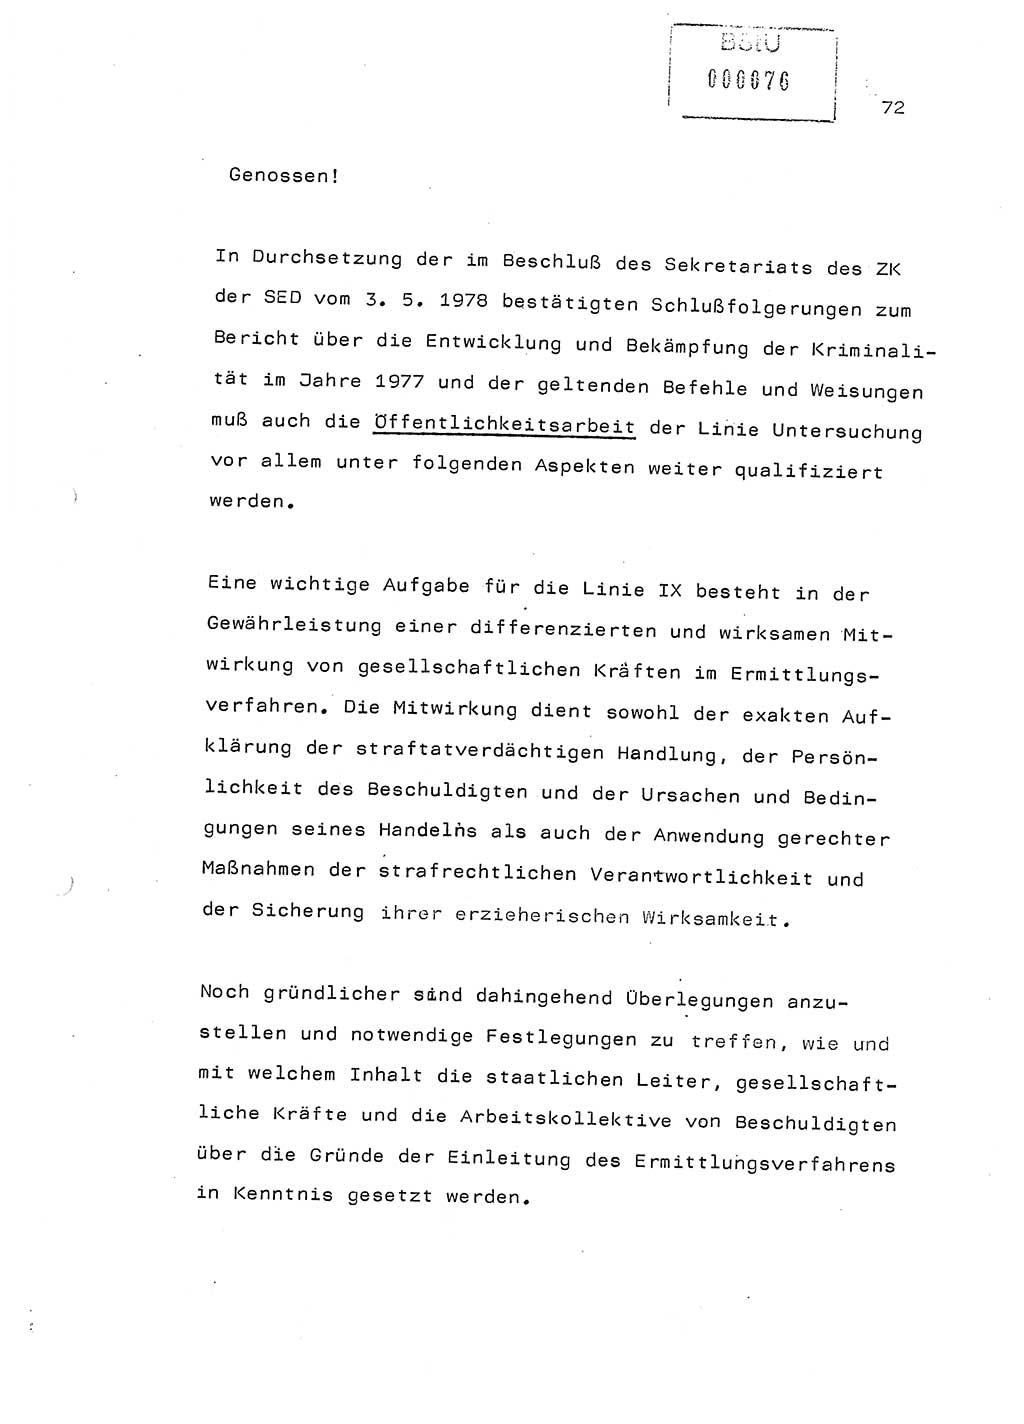 Referat (Generaloberst Erich Mielke) auf der Zentralen Dienstkonferenz am 24.5.1979 [Ministerium für Staatssicherheit (MfS), Deutsche Demokratische Republik (DDR), Der Minister], Berlin 1979, Seite 72 (Ref. DK DDR MfS Min. /79 1979, S. 72)